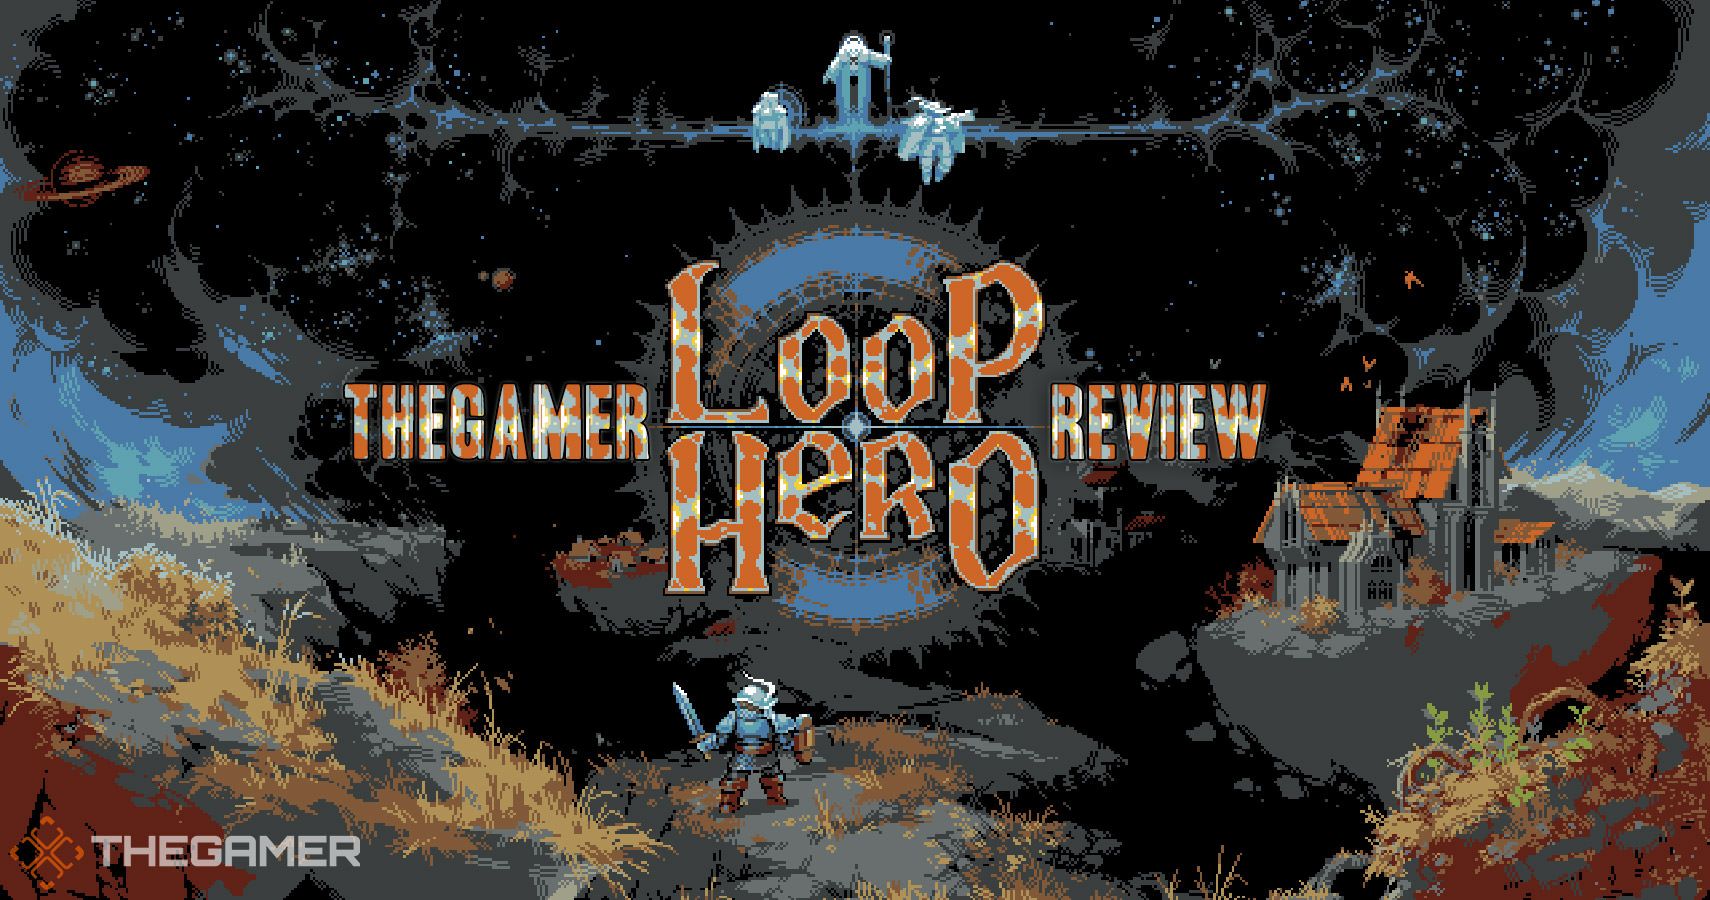 loop hero arsenal